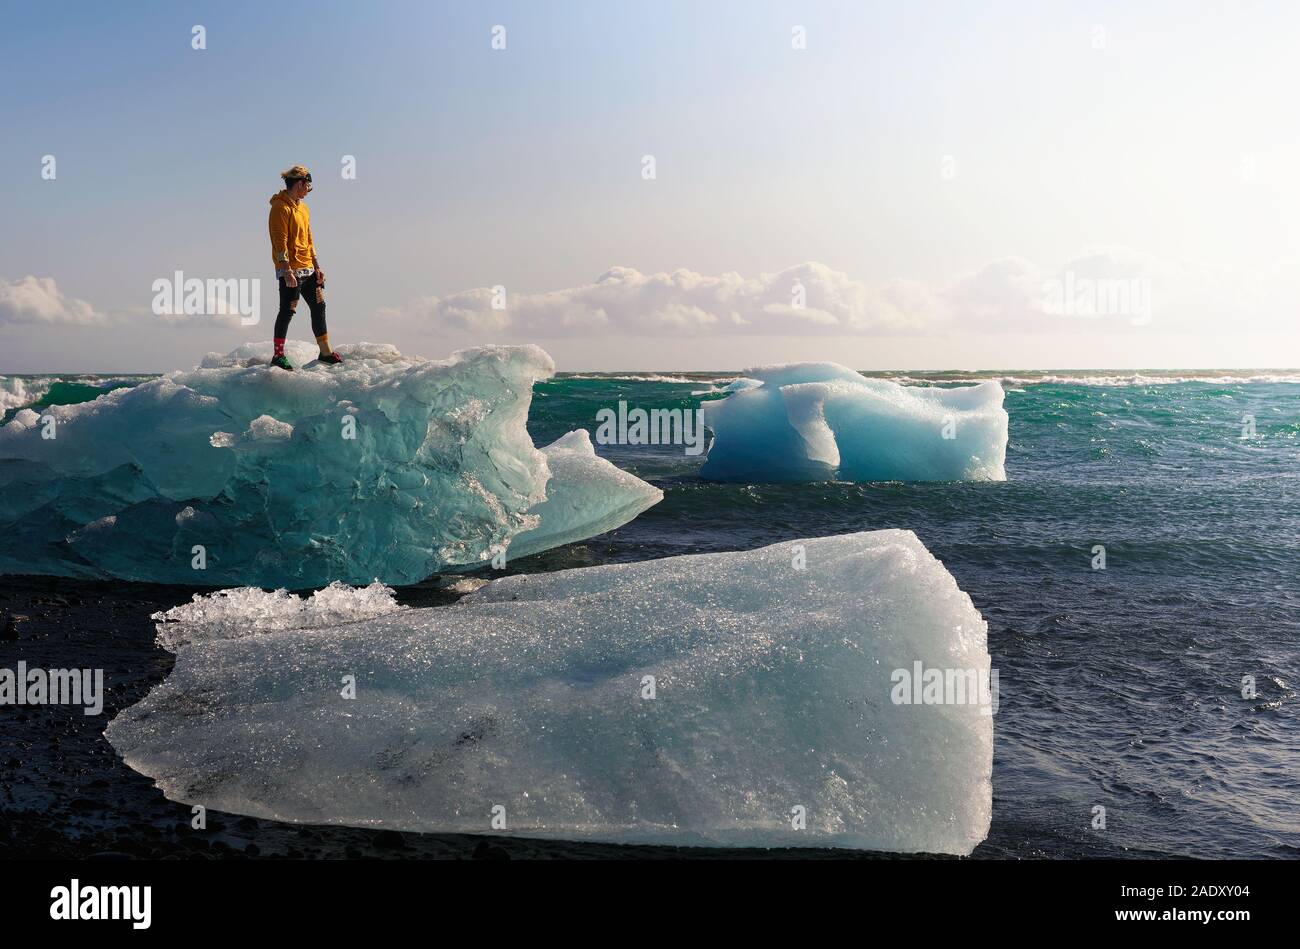 Touristische stehend auf einem Eisberg im Diamond Beach in Gletscherlagune Jokulsarlon in Island. Dieser Strand ist bekannt für seine grossen Felsen liegen auf dem Bekannten Stockfoto